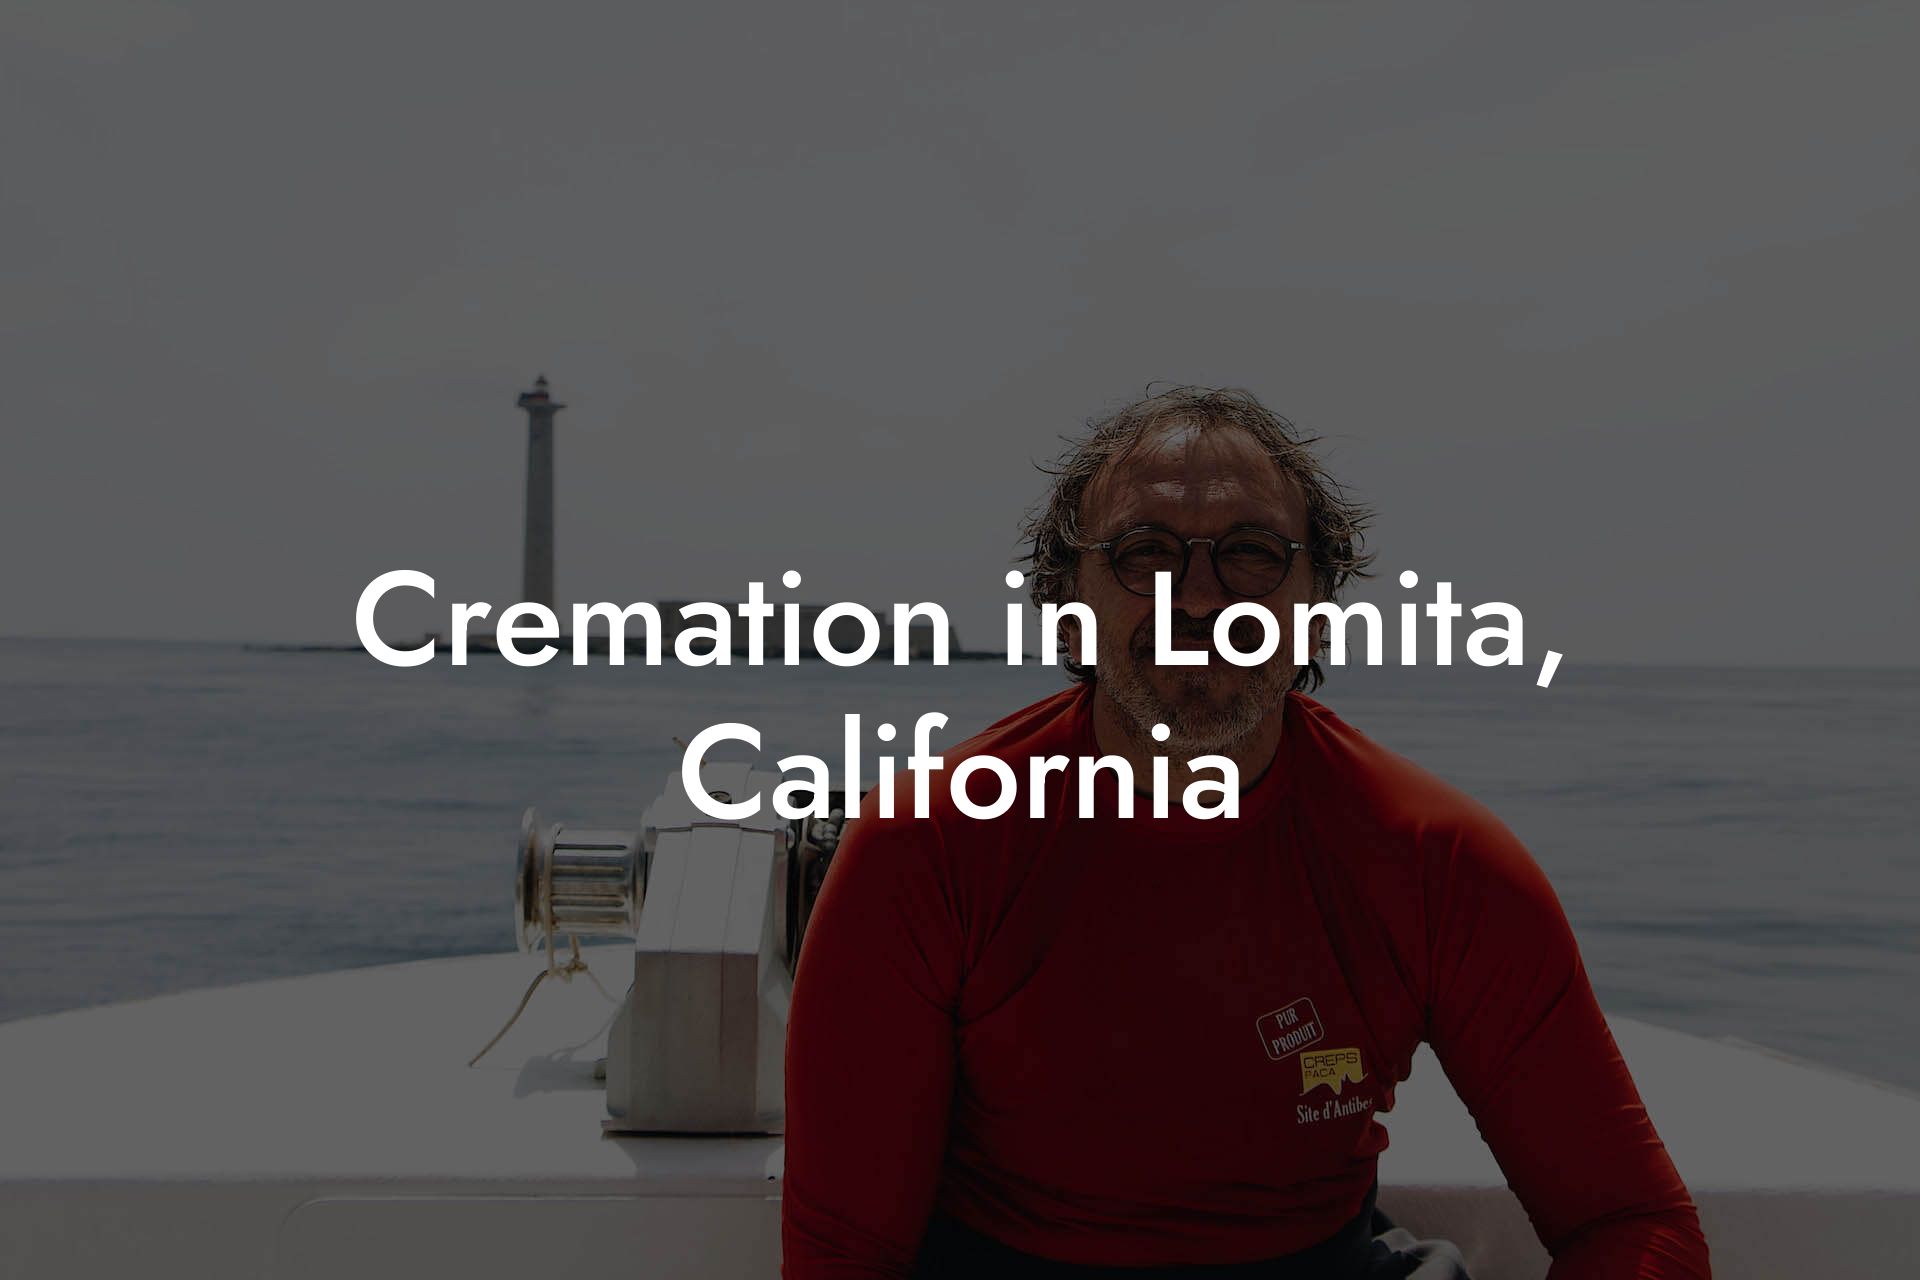 Cremation in Lomita, California